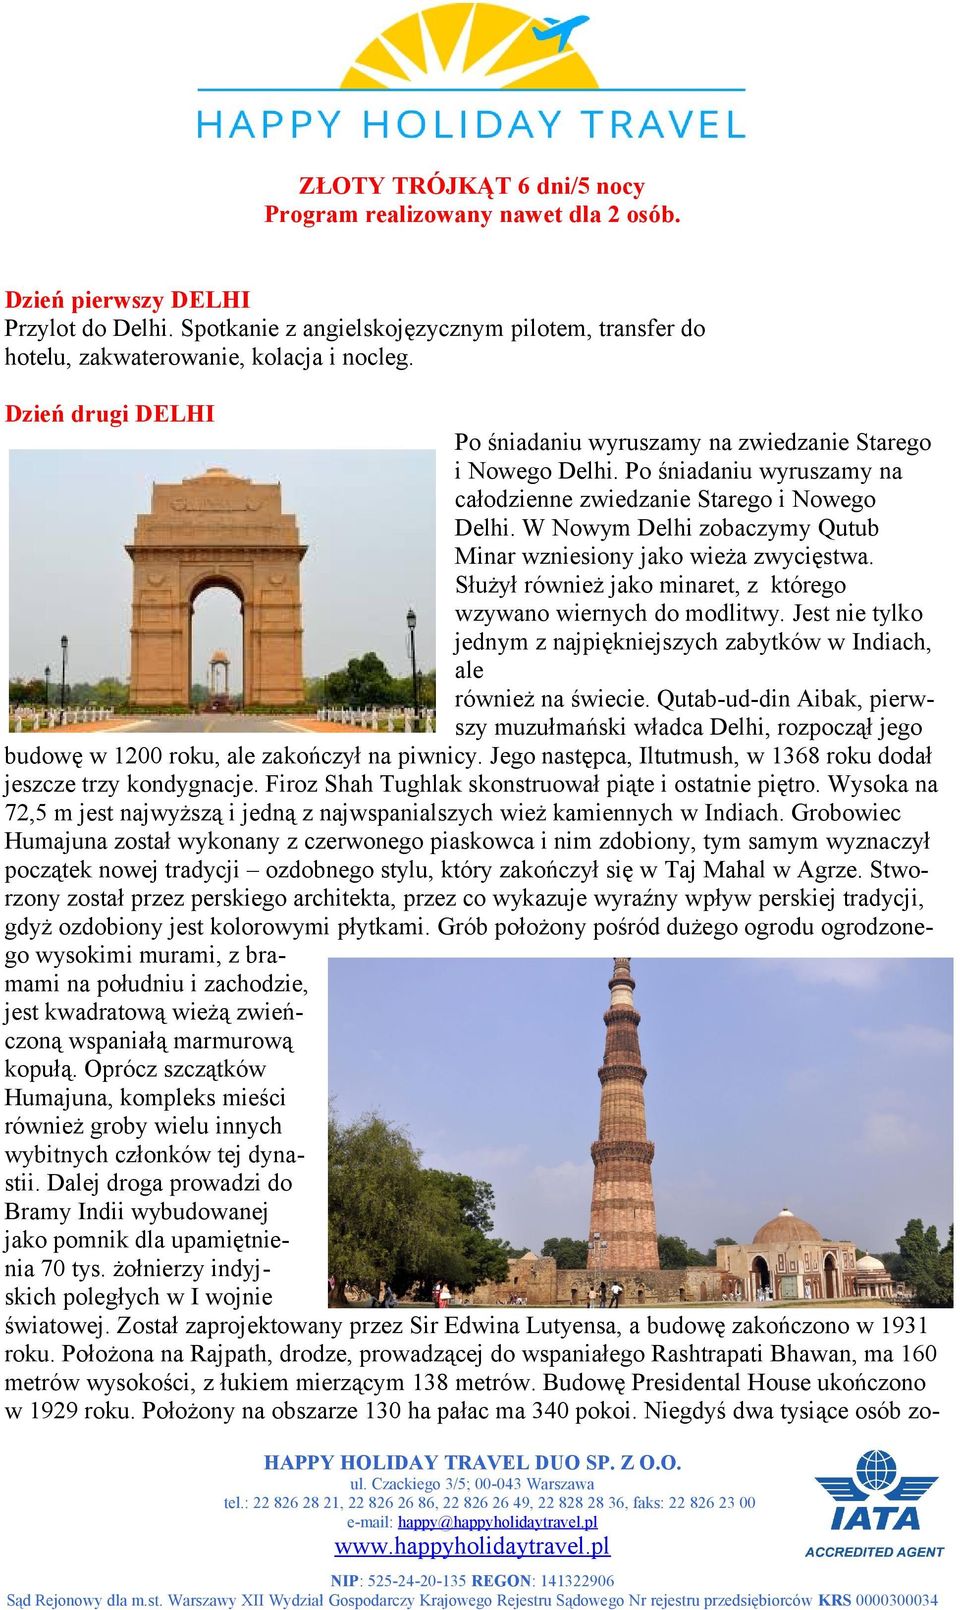 W Nowym Delhi zobaczymy Qutub Minar wzniesiony jako wieża zwycięstwa. Służył również jako minaret, z którego wzywano wiernych do modlitwy.